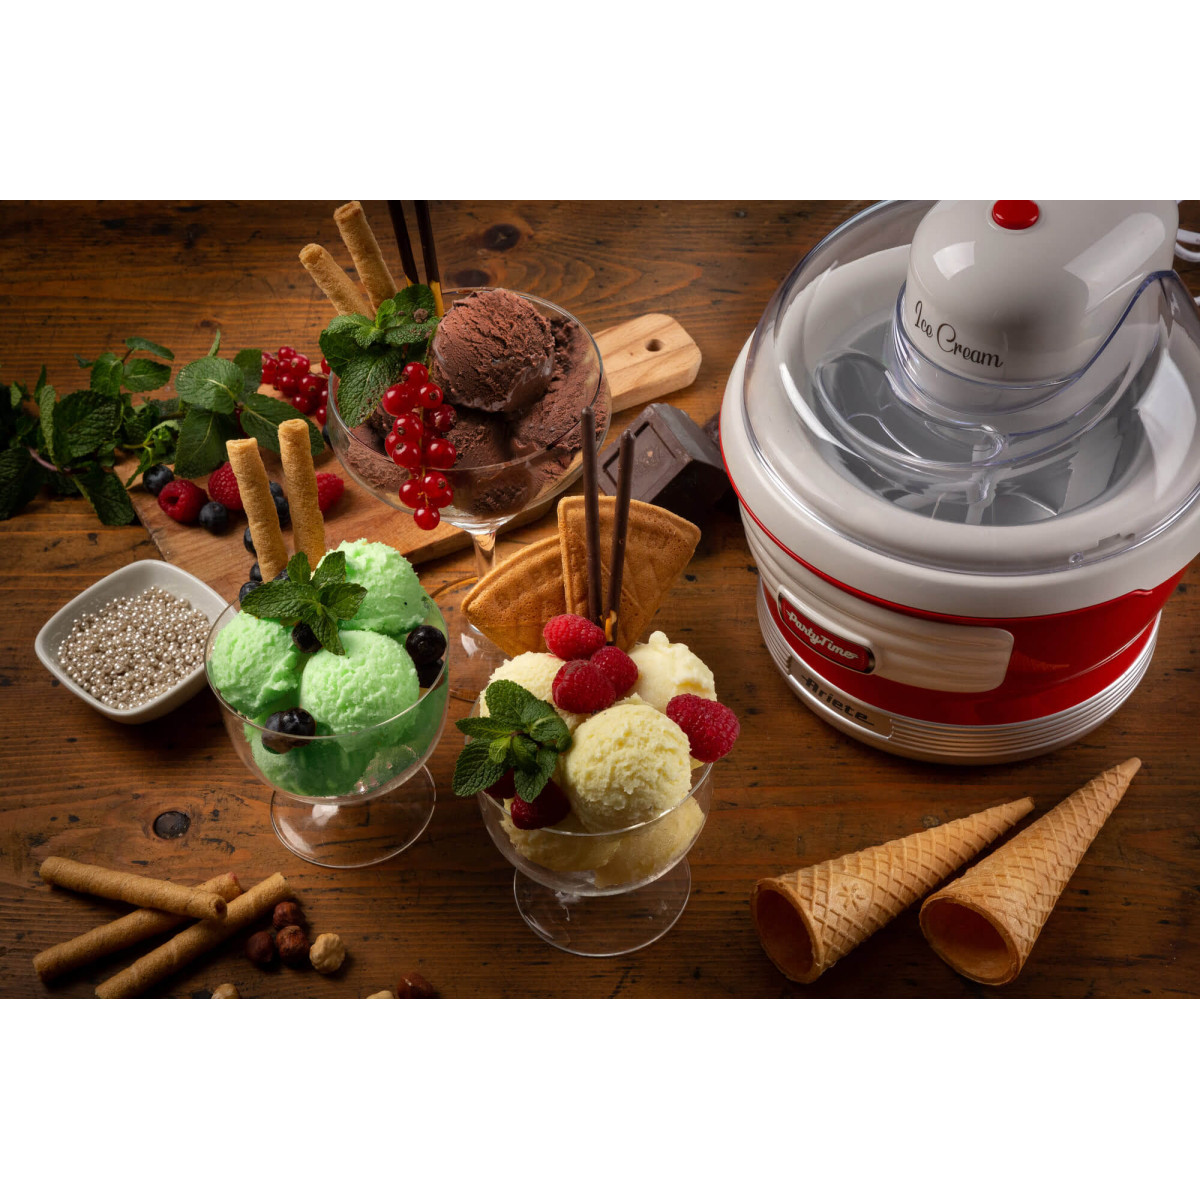 Ariete Ice Cream & Yogurt Maker 635: leggi la recensione con foto.